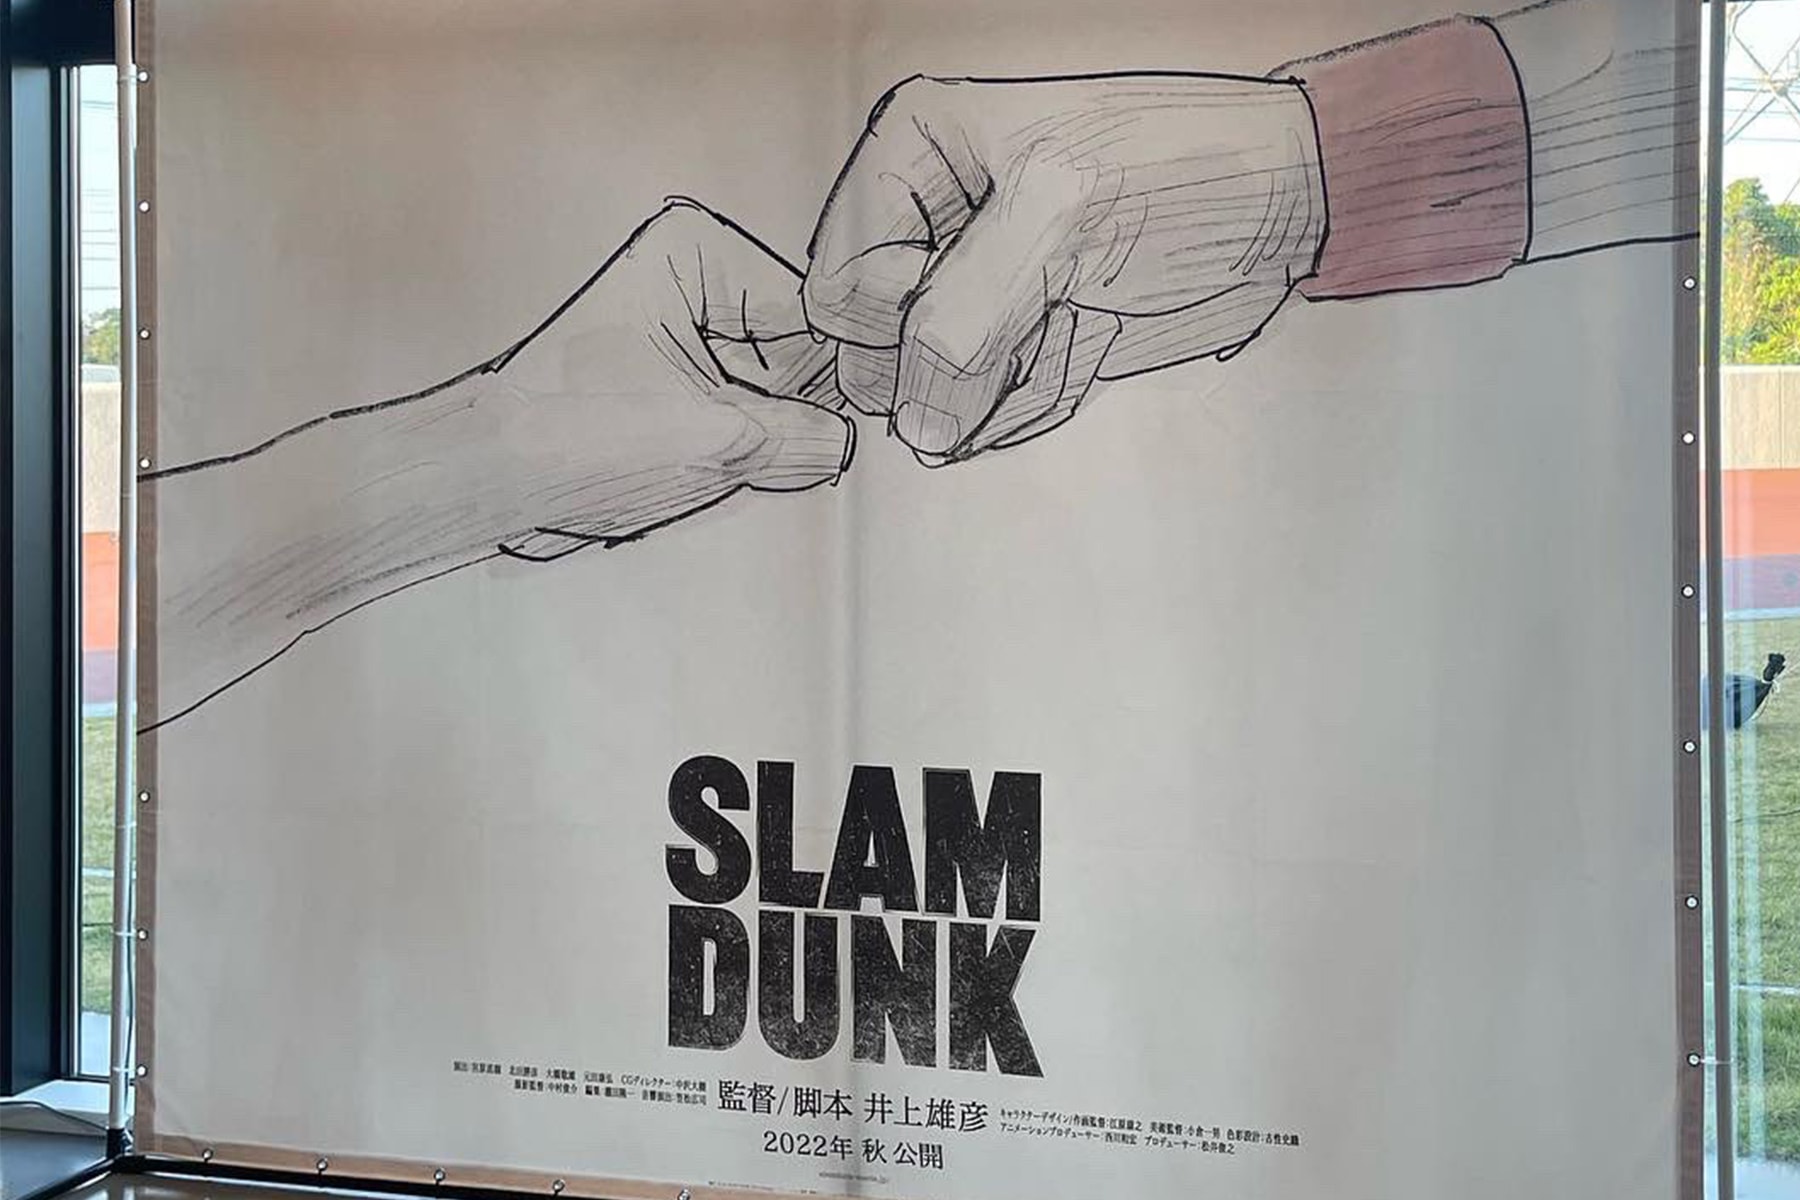 《灌籃高手 SLAM DUNK》劇場版全新視覺圖率先公開